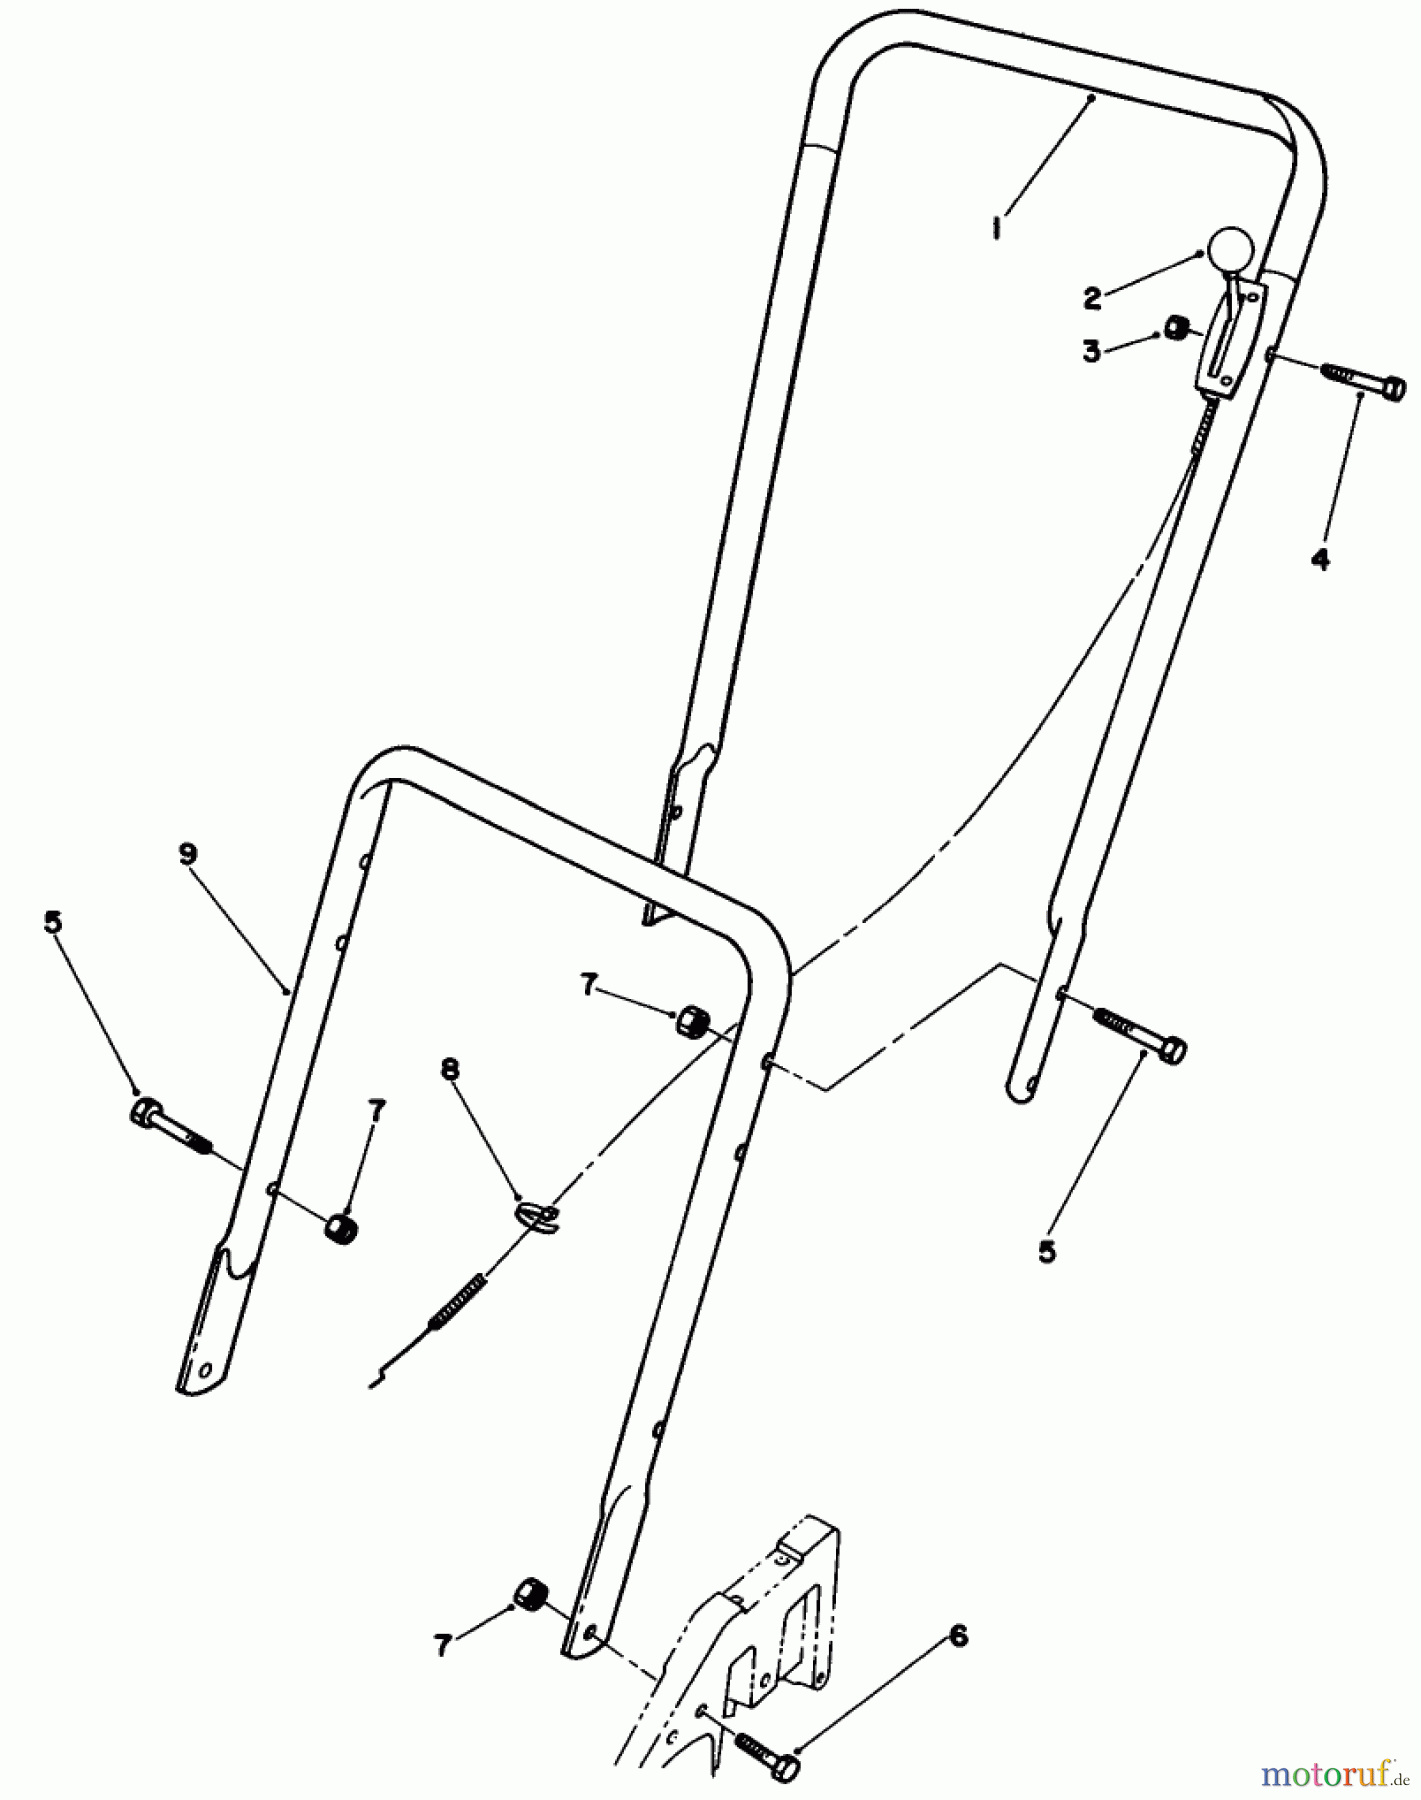  Toro Neu Mowers, Walk-Behind Seite 2 22025 - Toro Lawnmower, 1987 (7000001-7999999) HANDLE ASSEMBLY